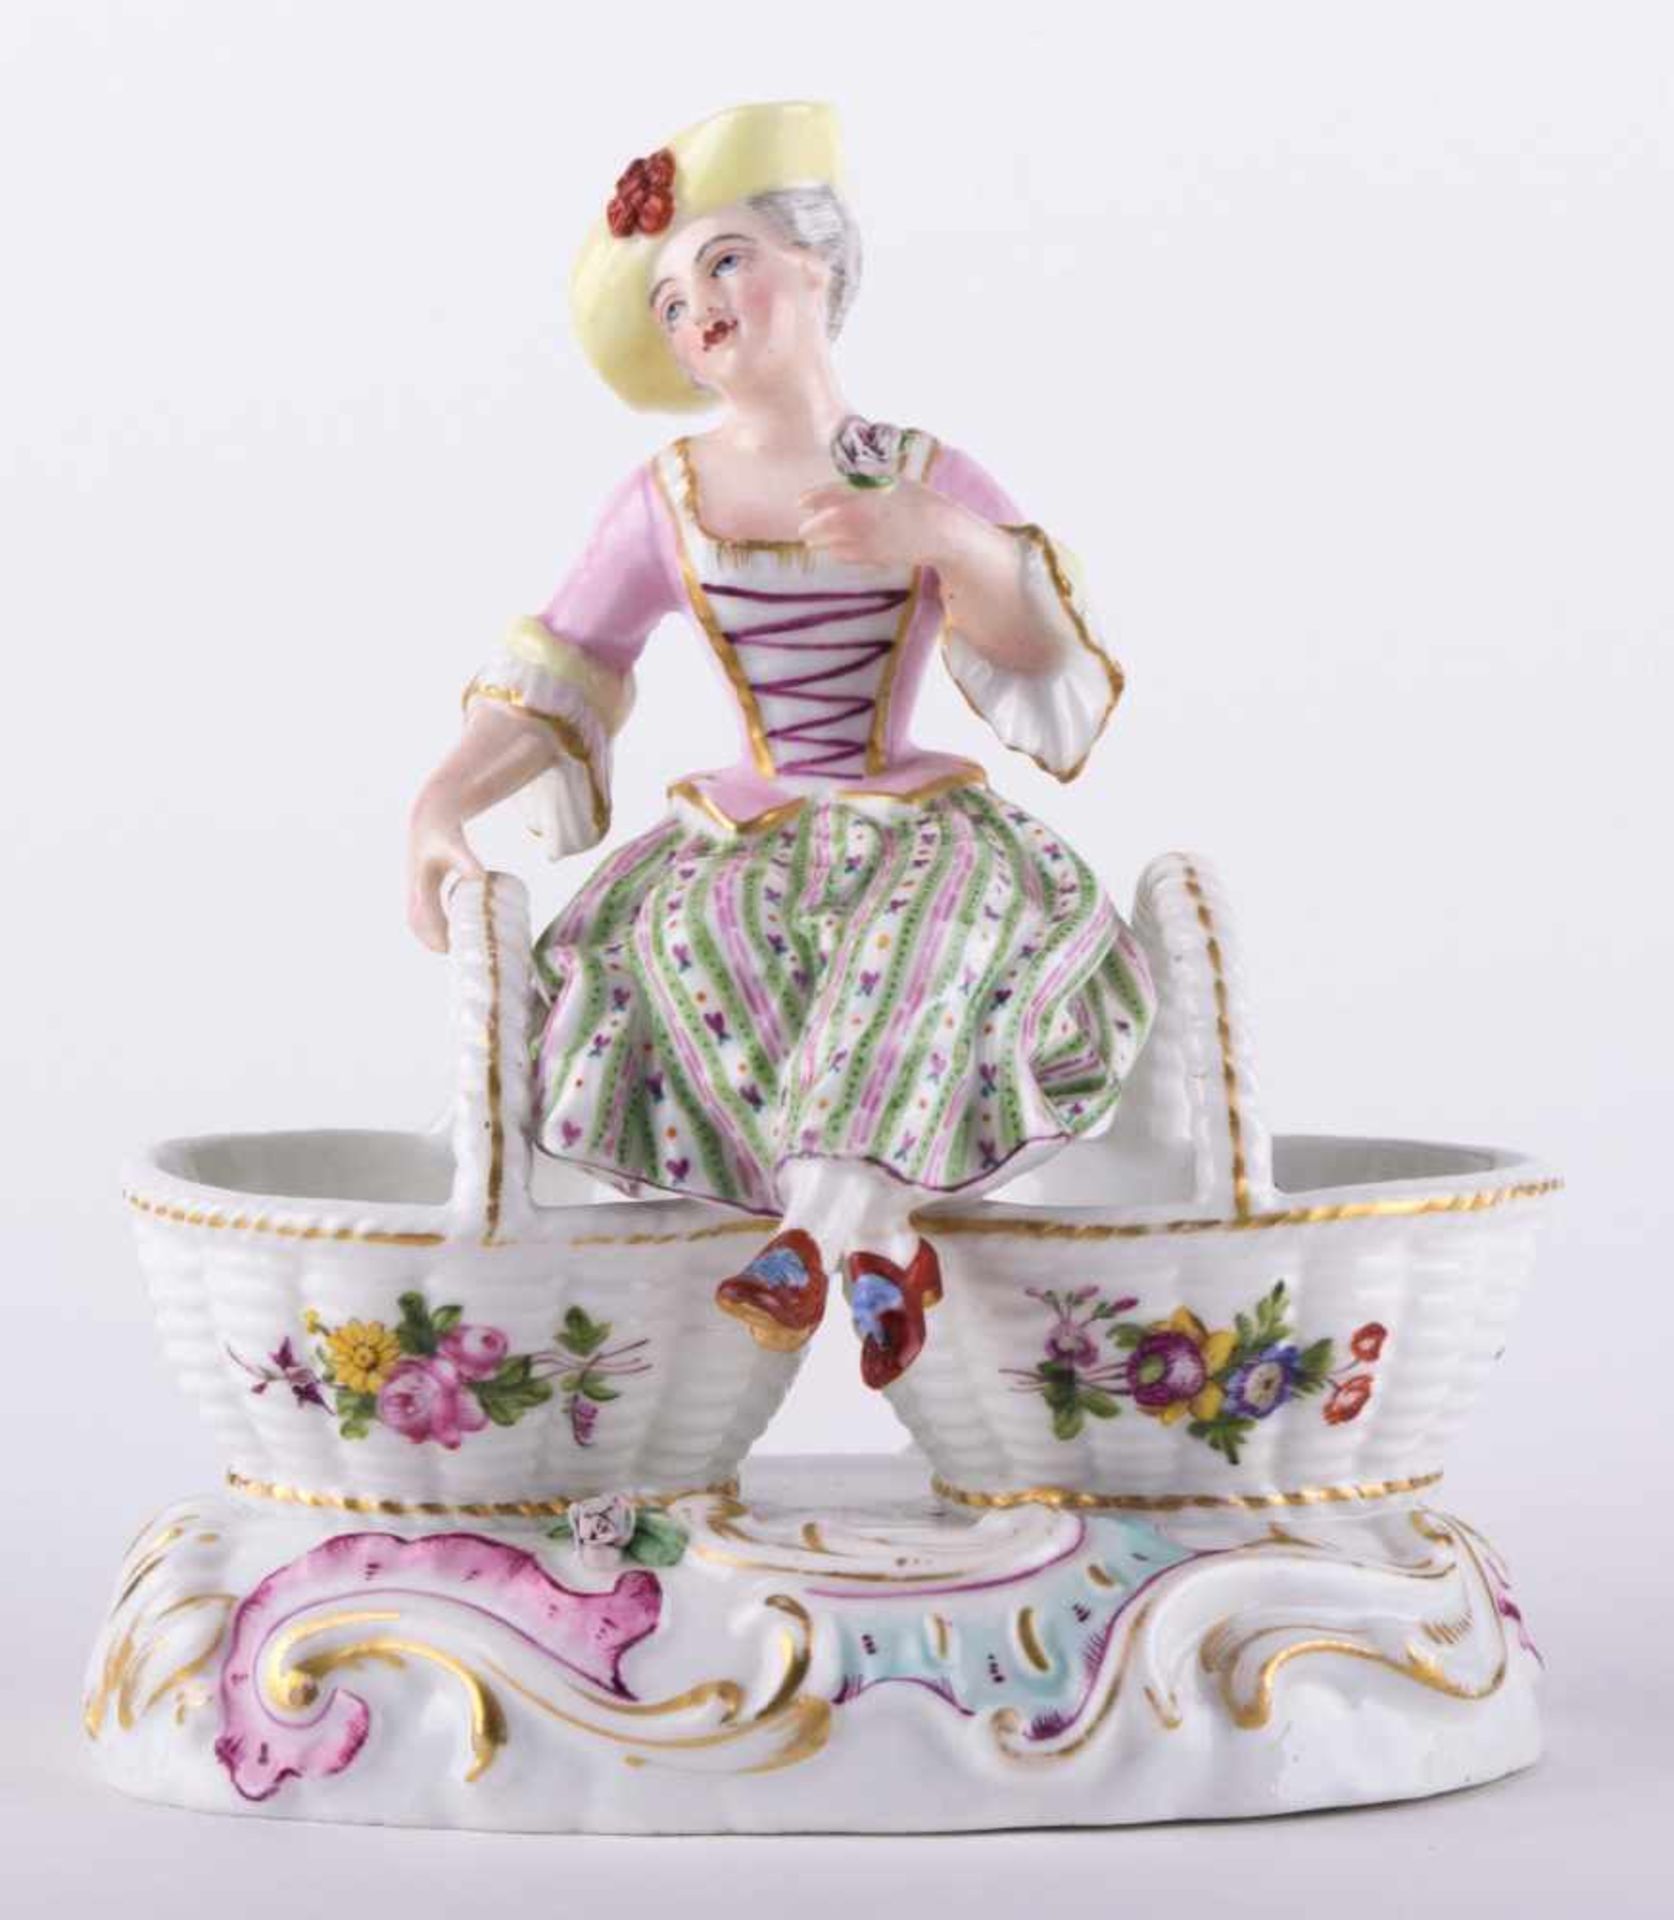 Saliére Frankreich 19. Jhd. / Condiment caster, 19th century farbig staffiert mit Blumendekor,